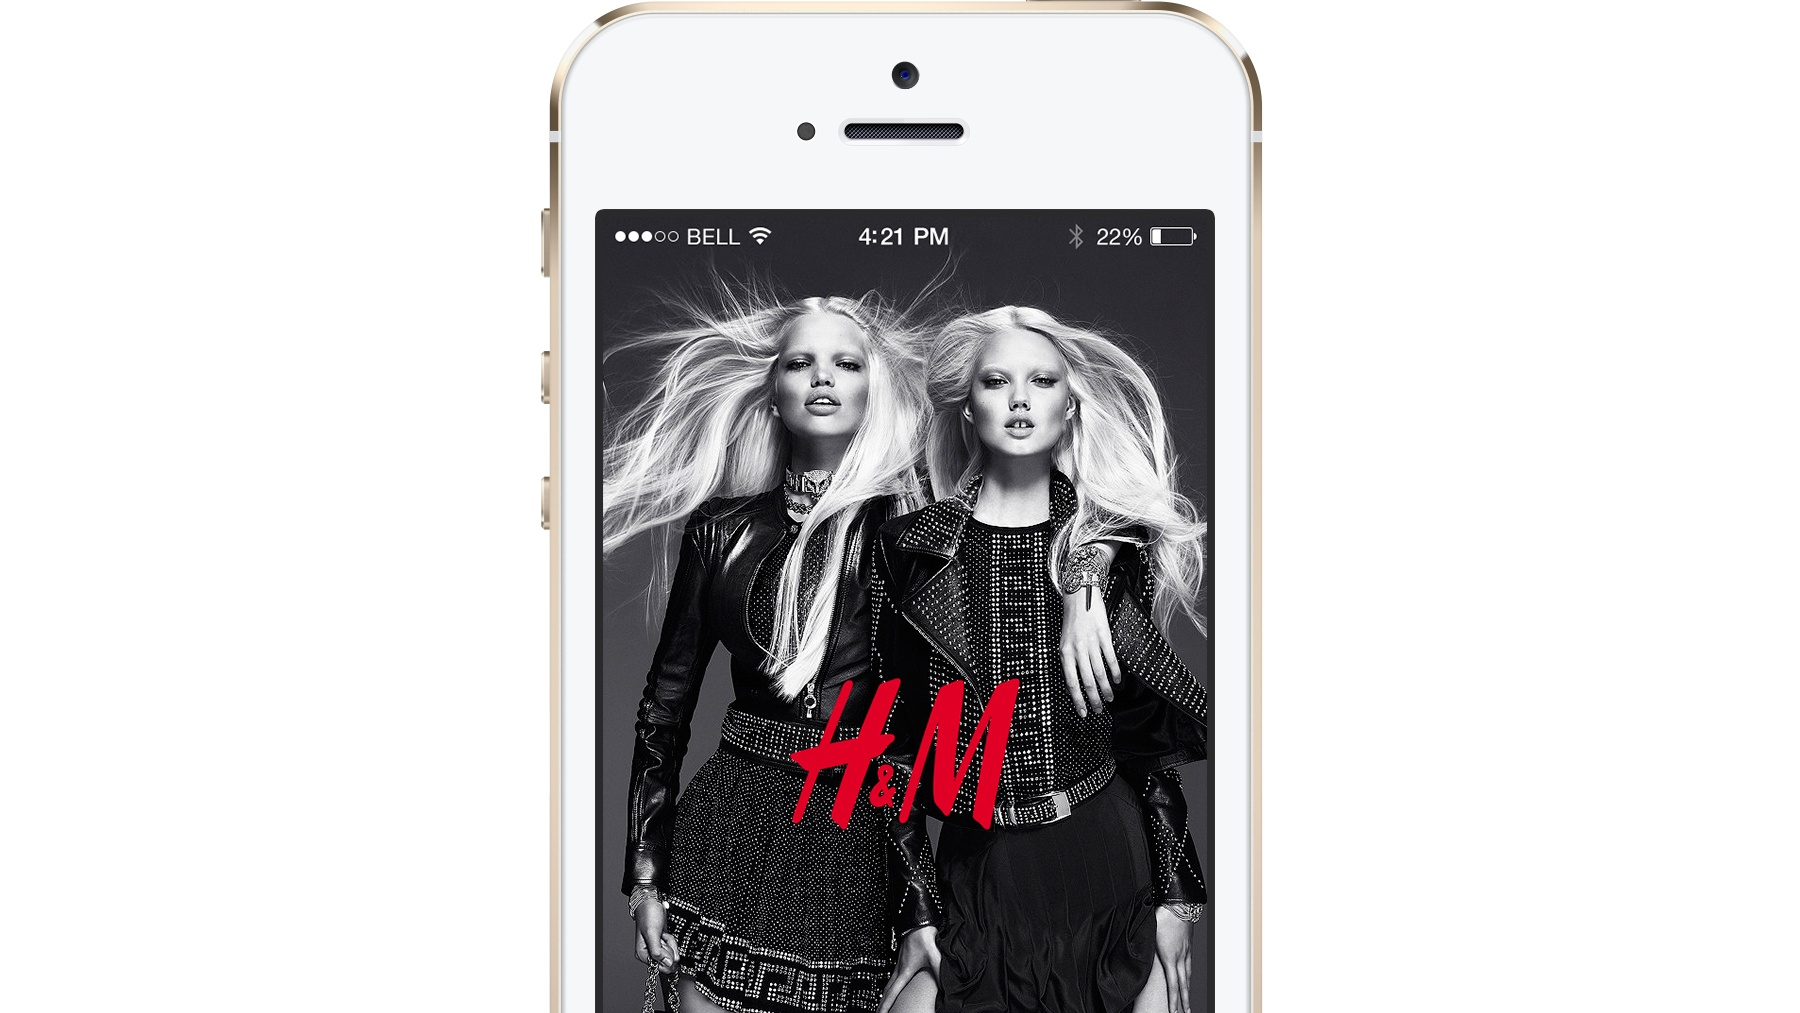 H&M helpt kleding online vinden met scanoptie